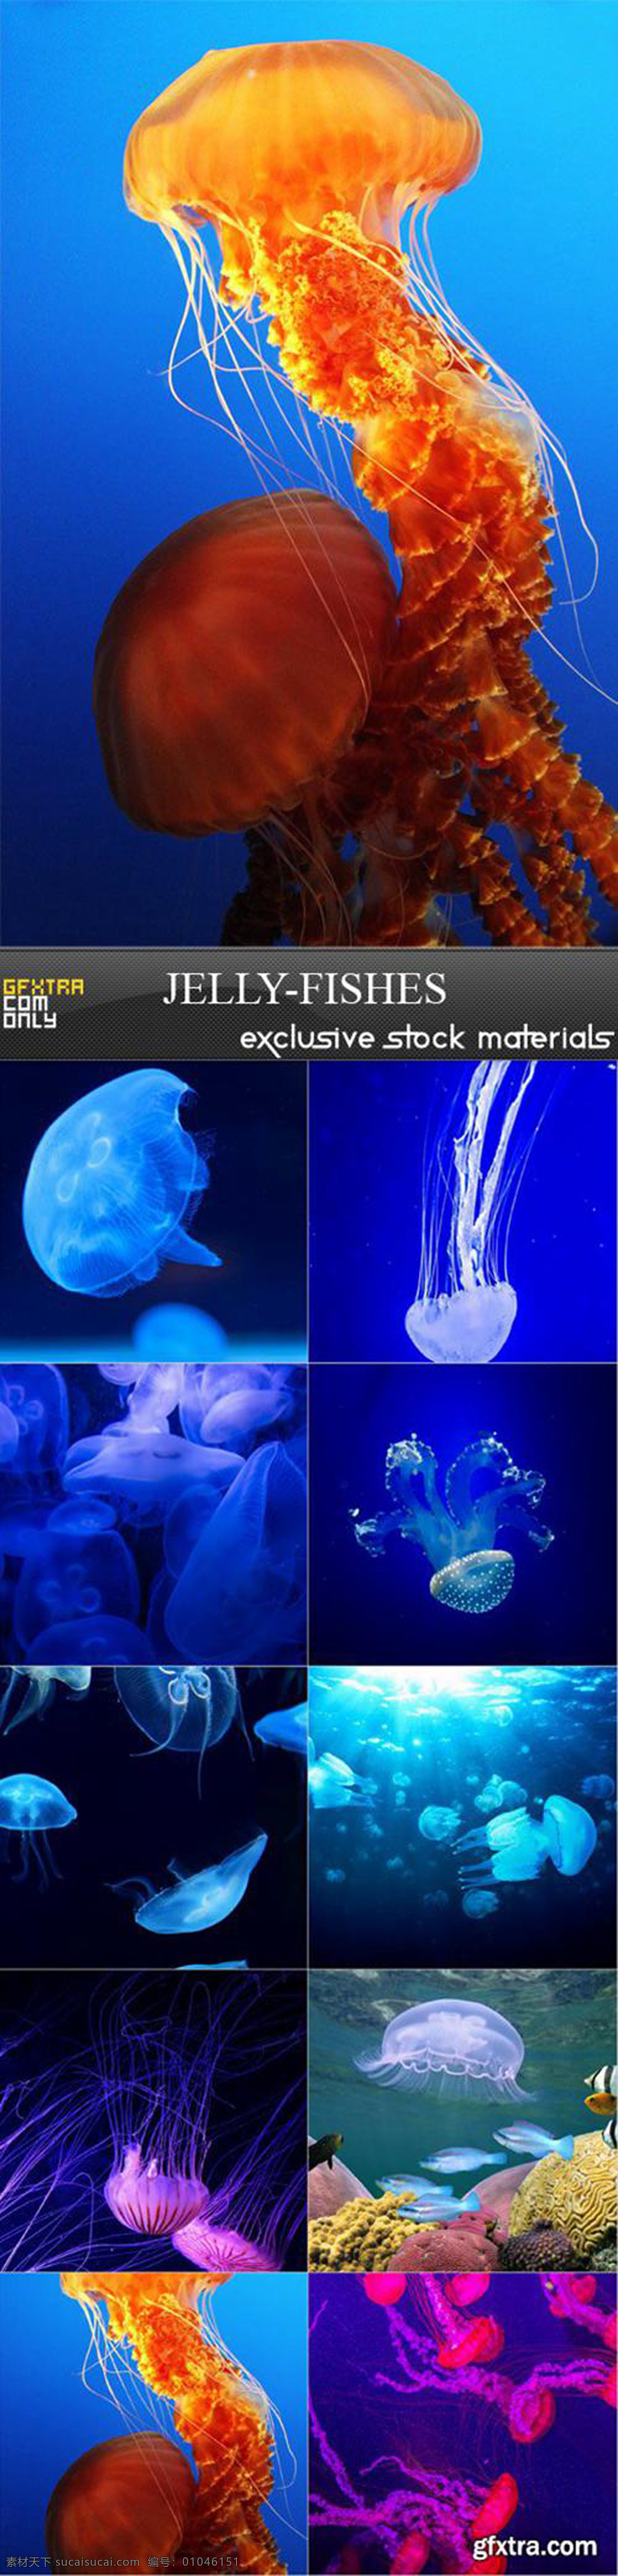 美丽的水母 海洋 生物 美丽 水母 蓝色